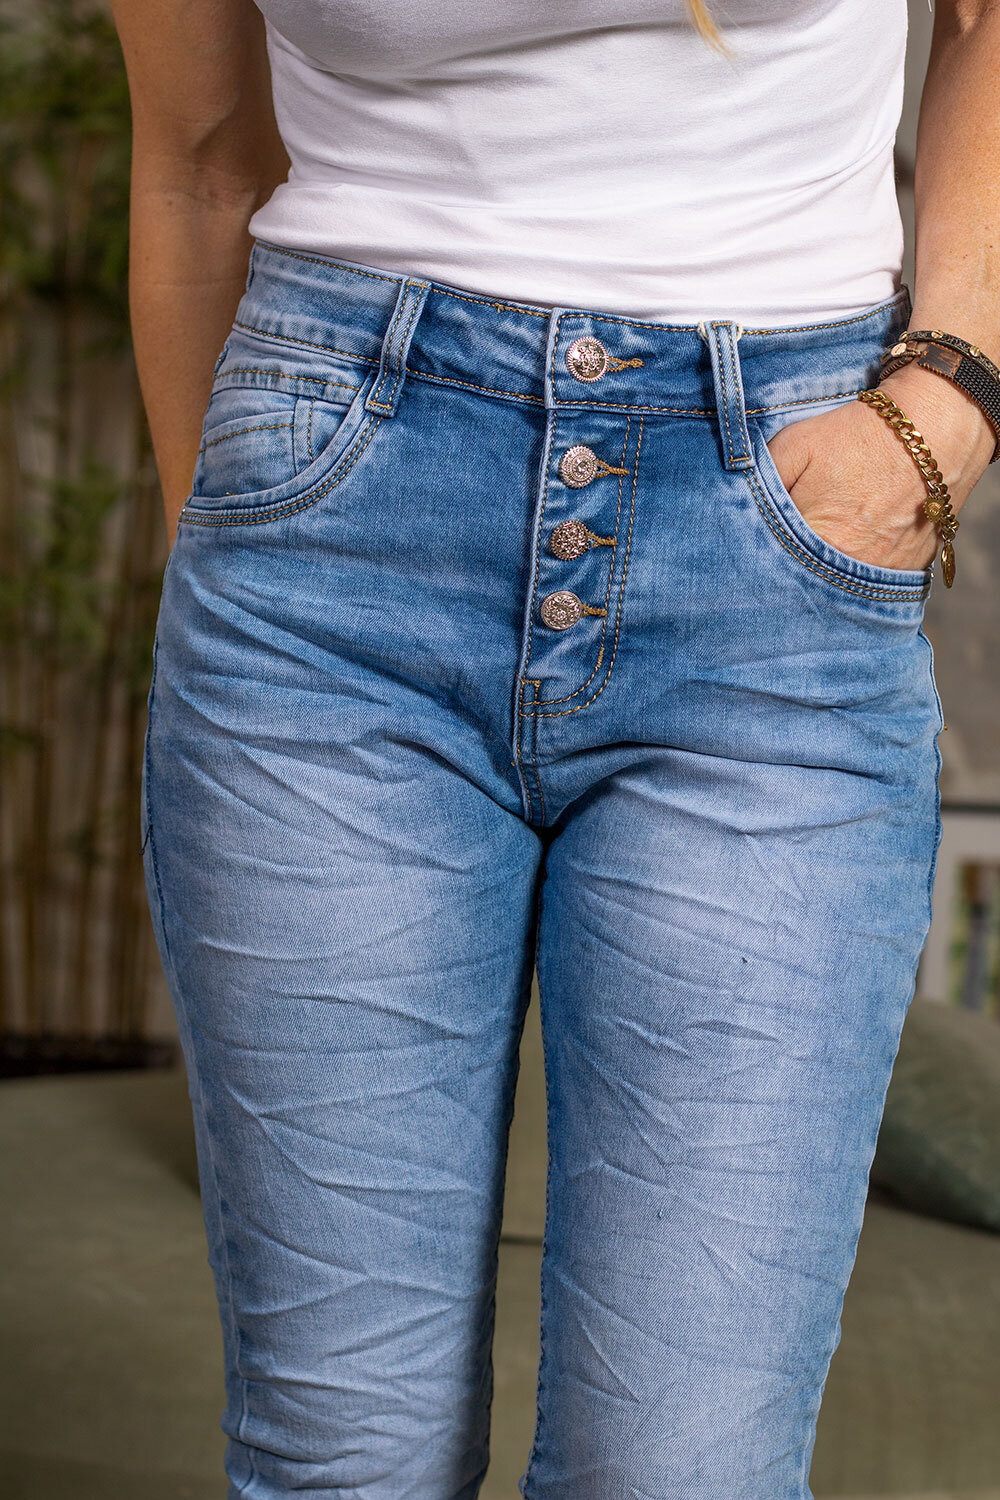 Jeans JW2318 - Bling knappar - Ljustvätt